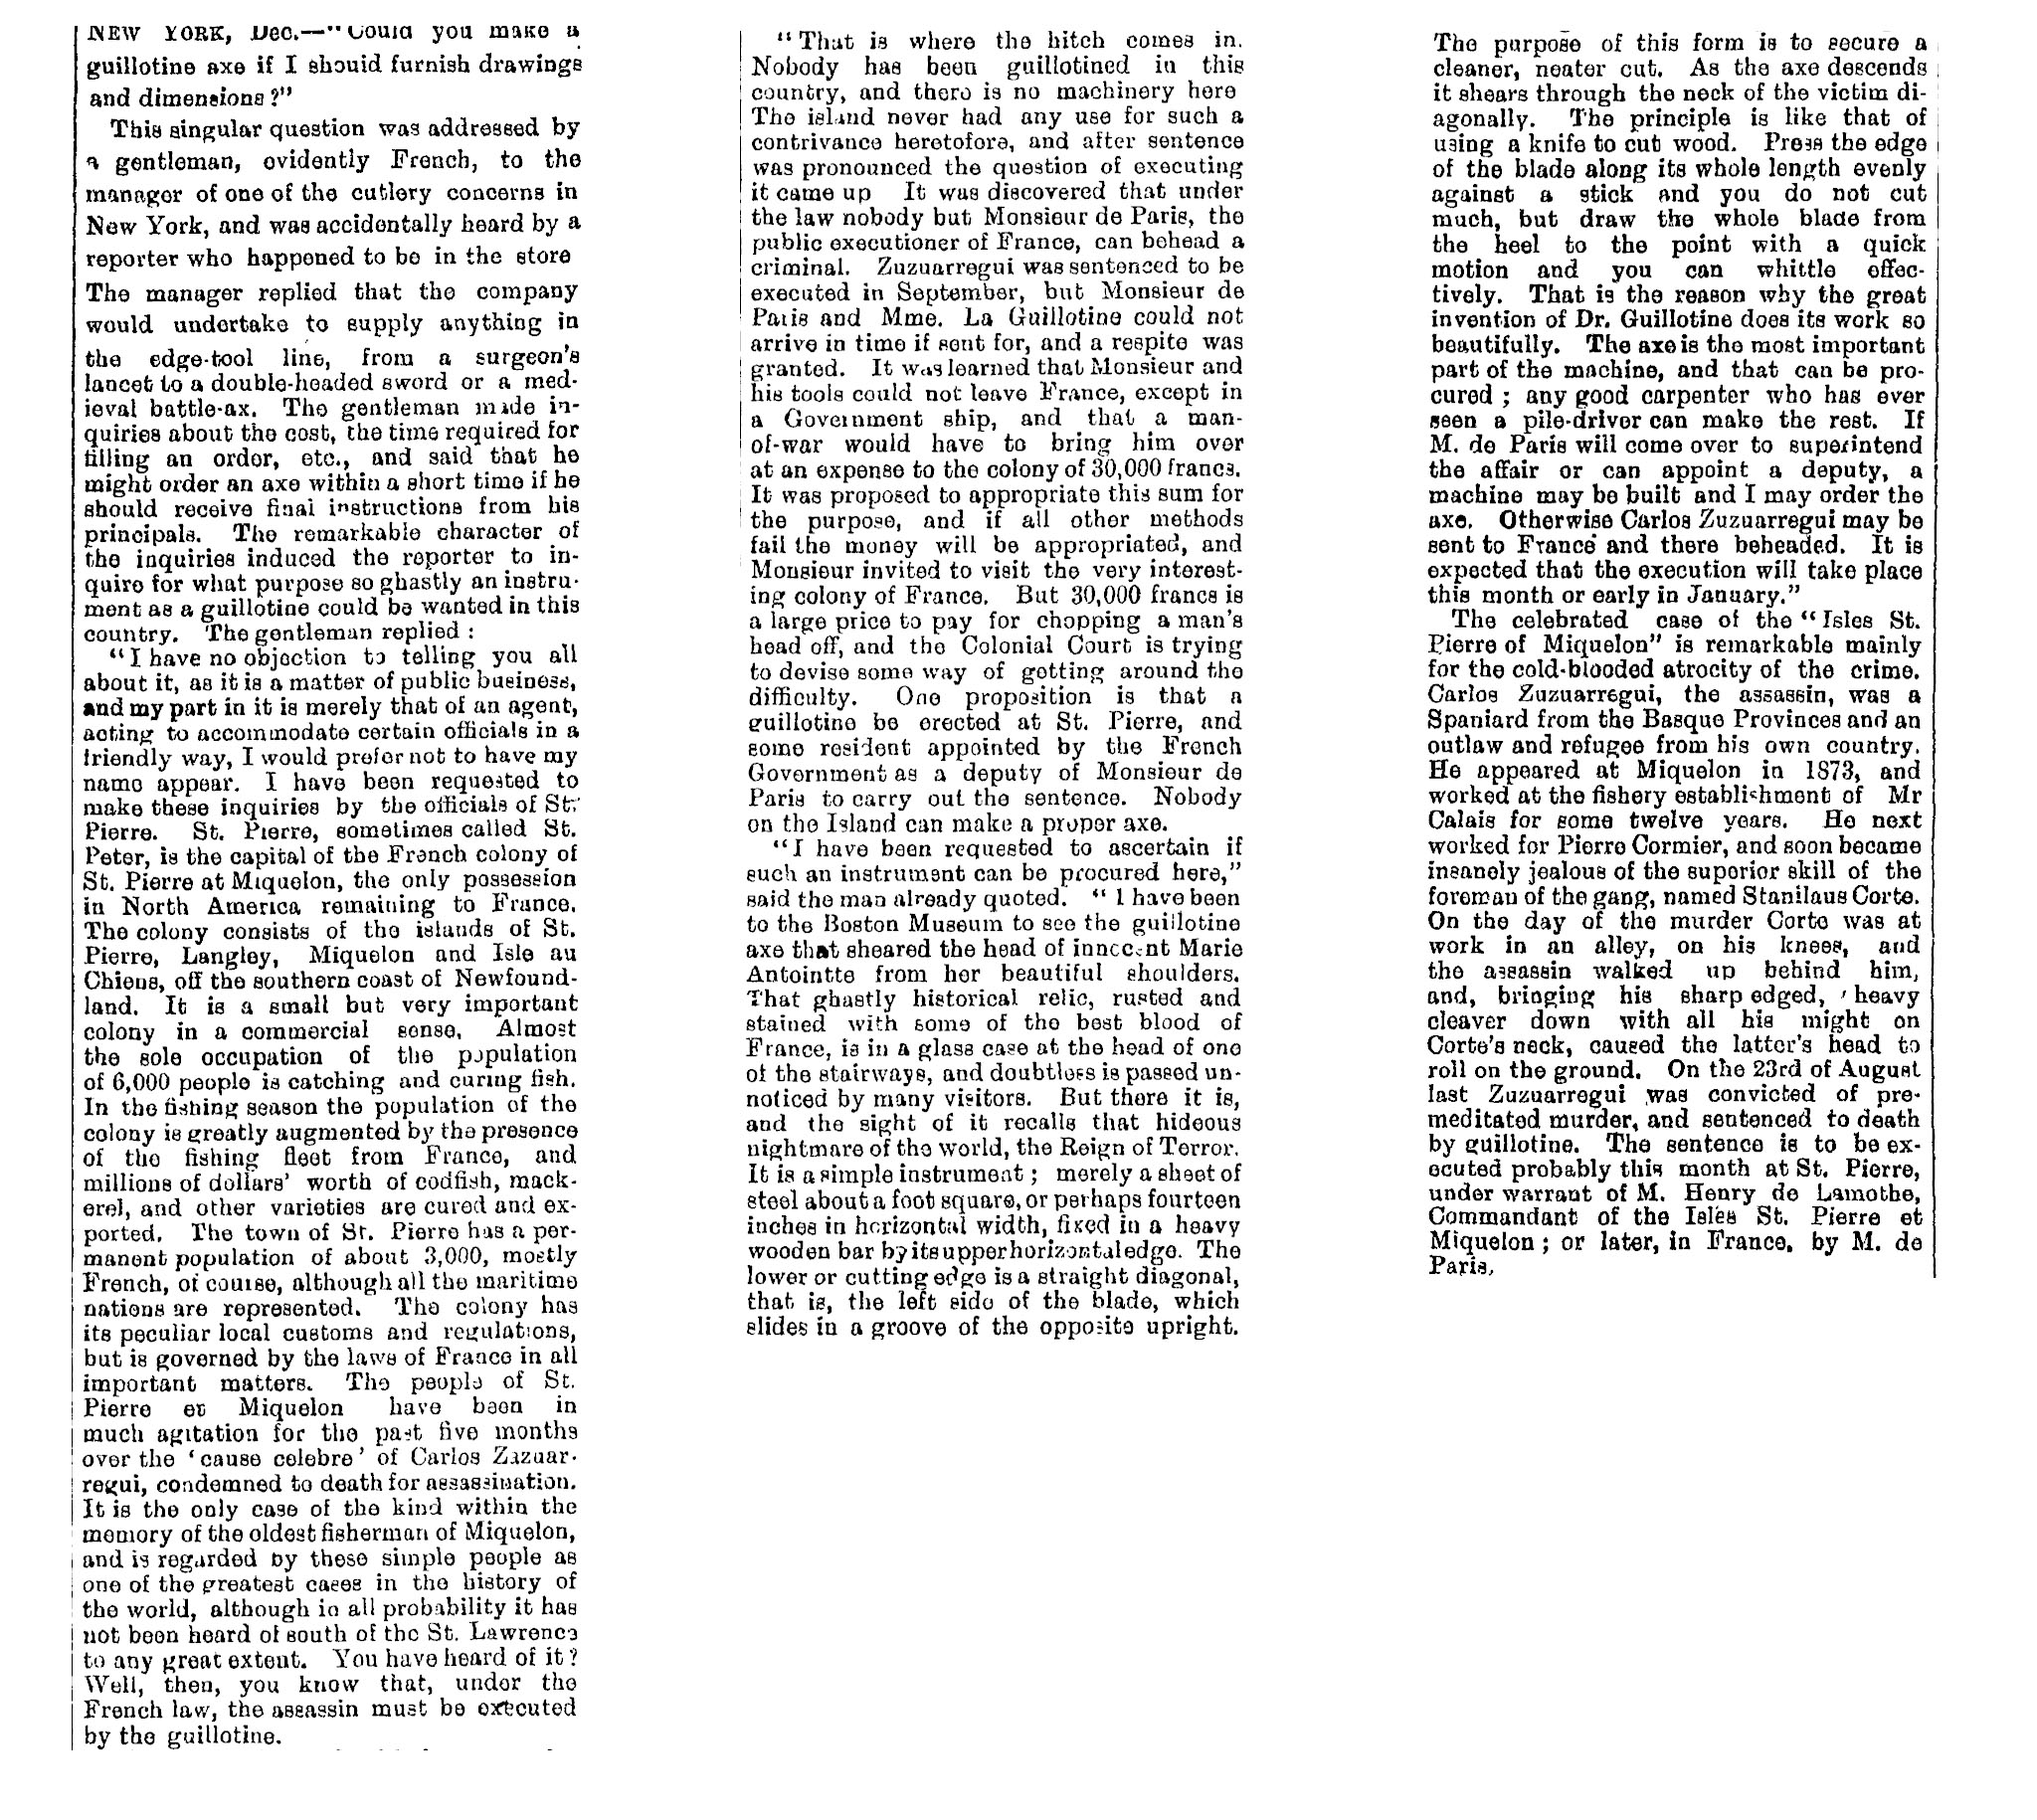 1887 – Affaire Zuzuaregui: New York Sun